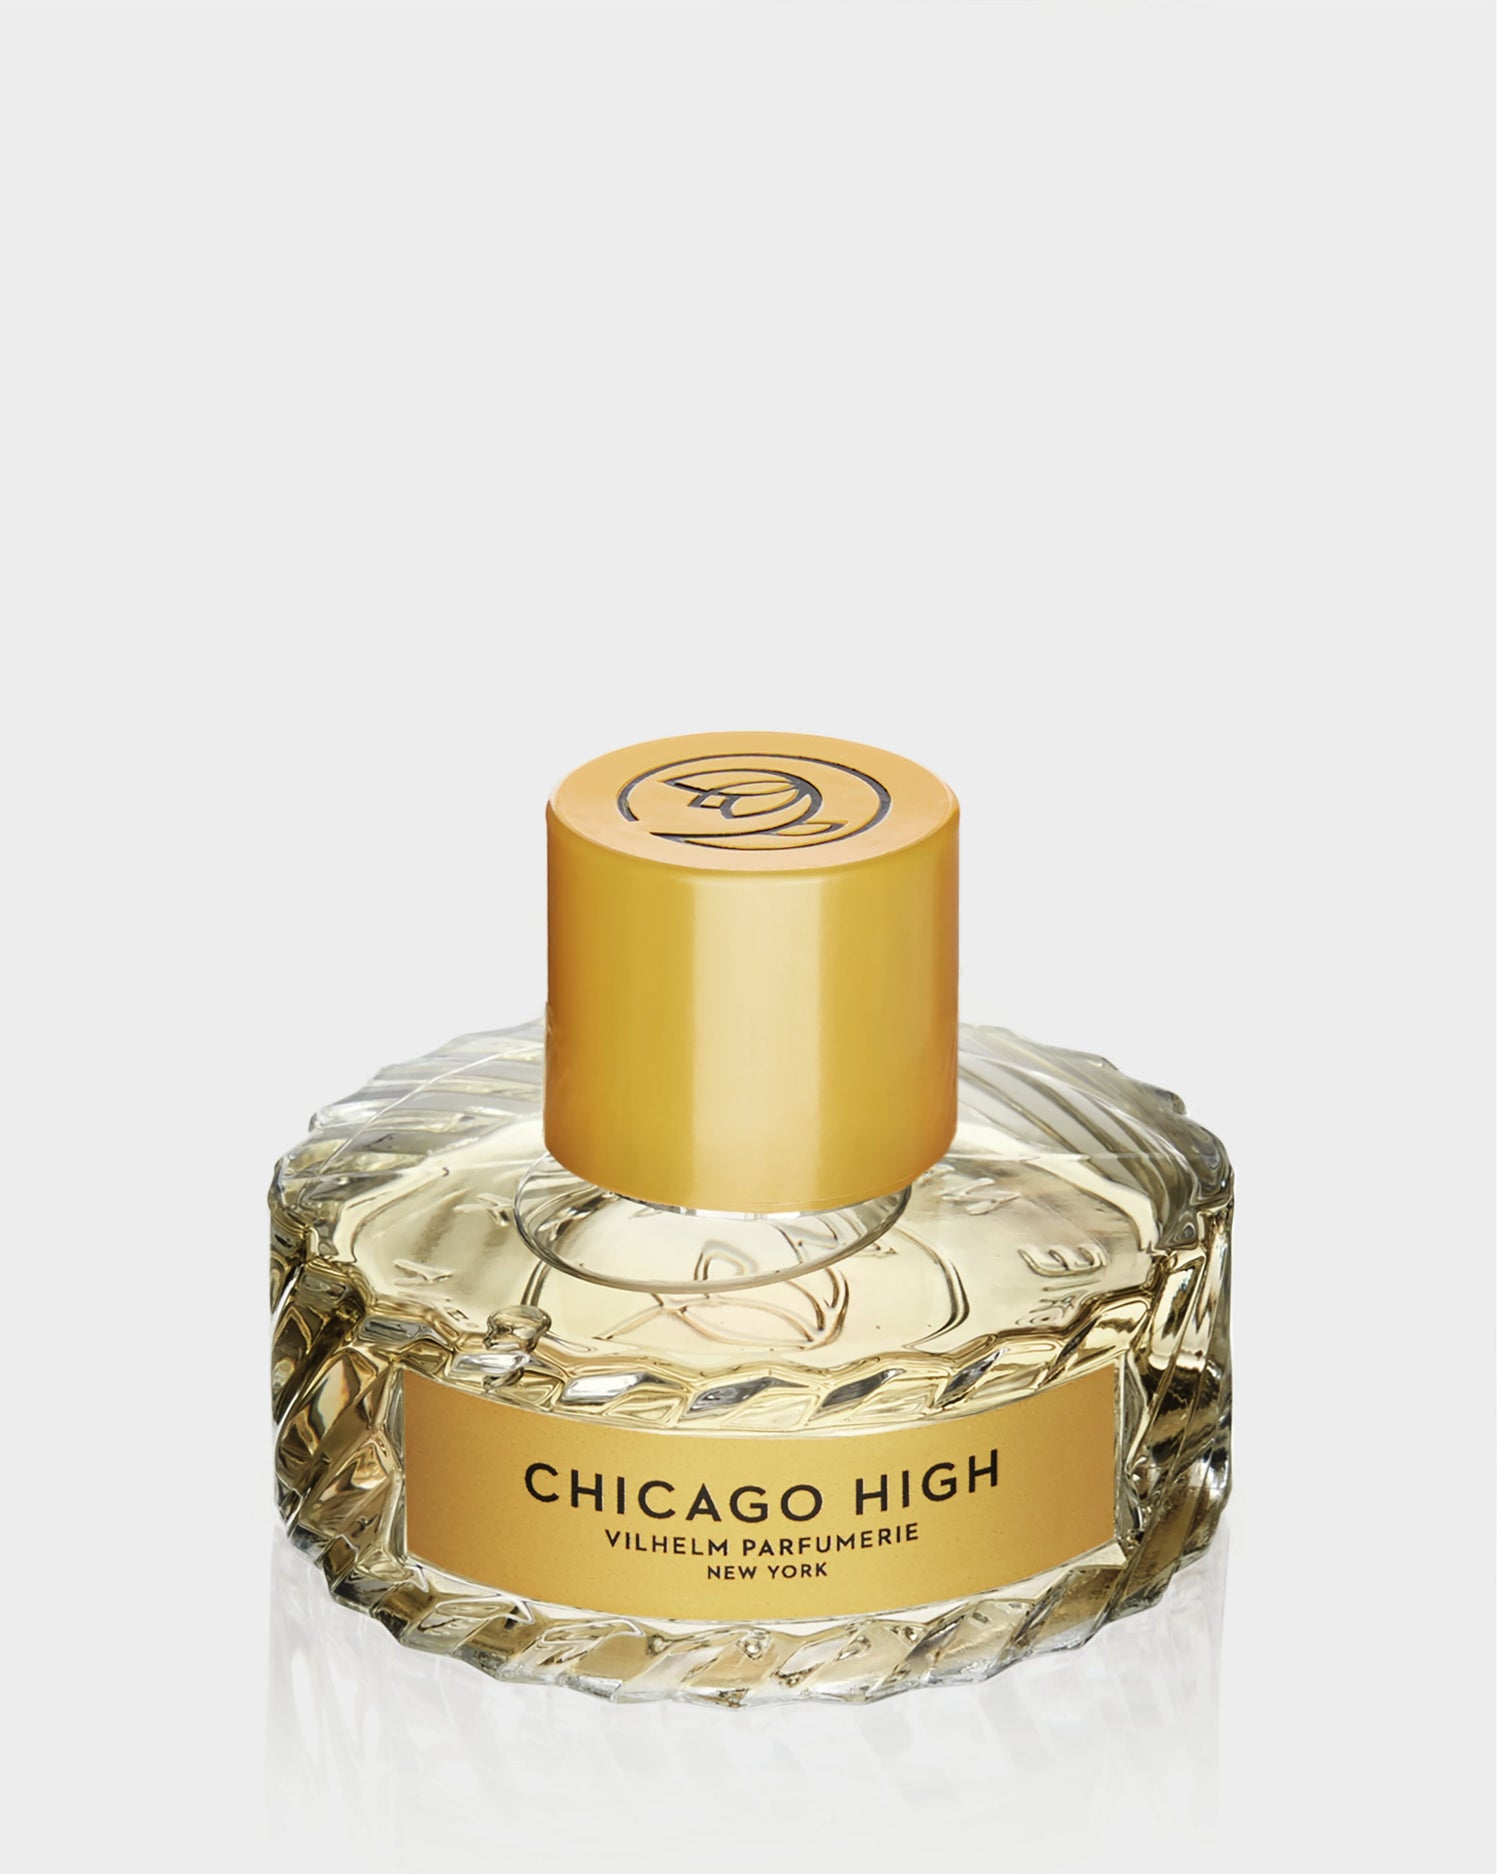 CHICAGO HIGH - Vilhelm Parfumerie